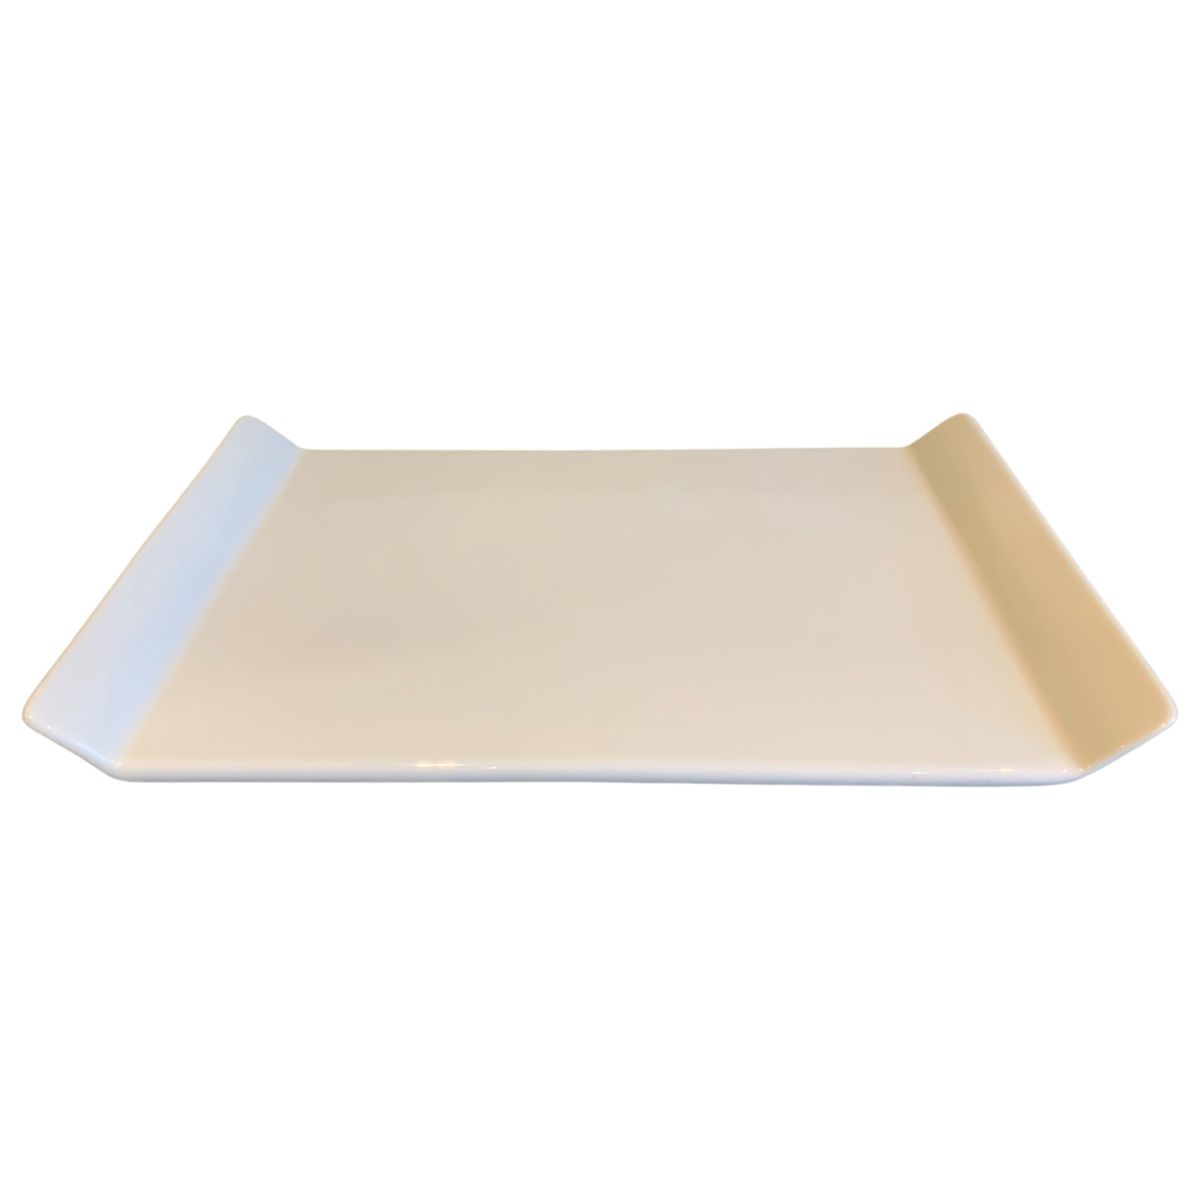 sushi plate rectangular white porcelain 32x20 hg25cm